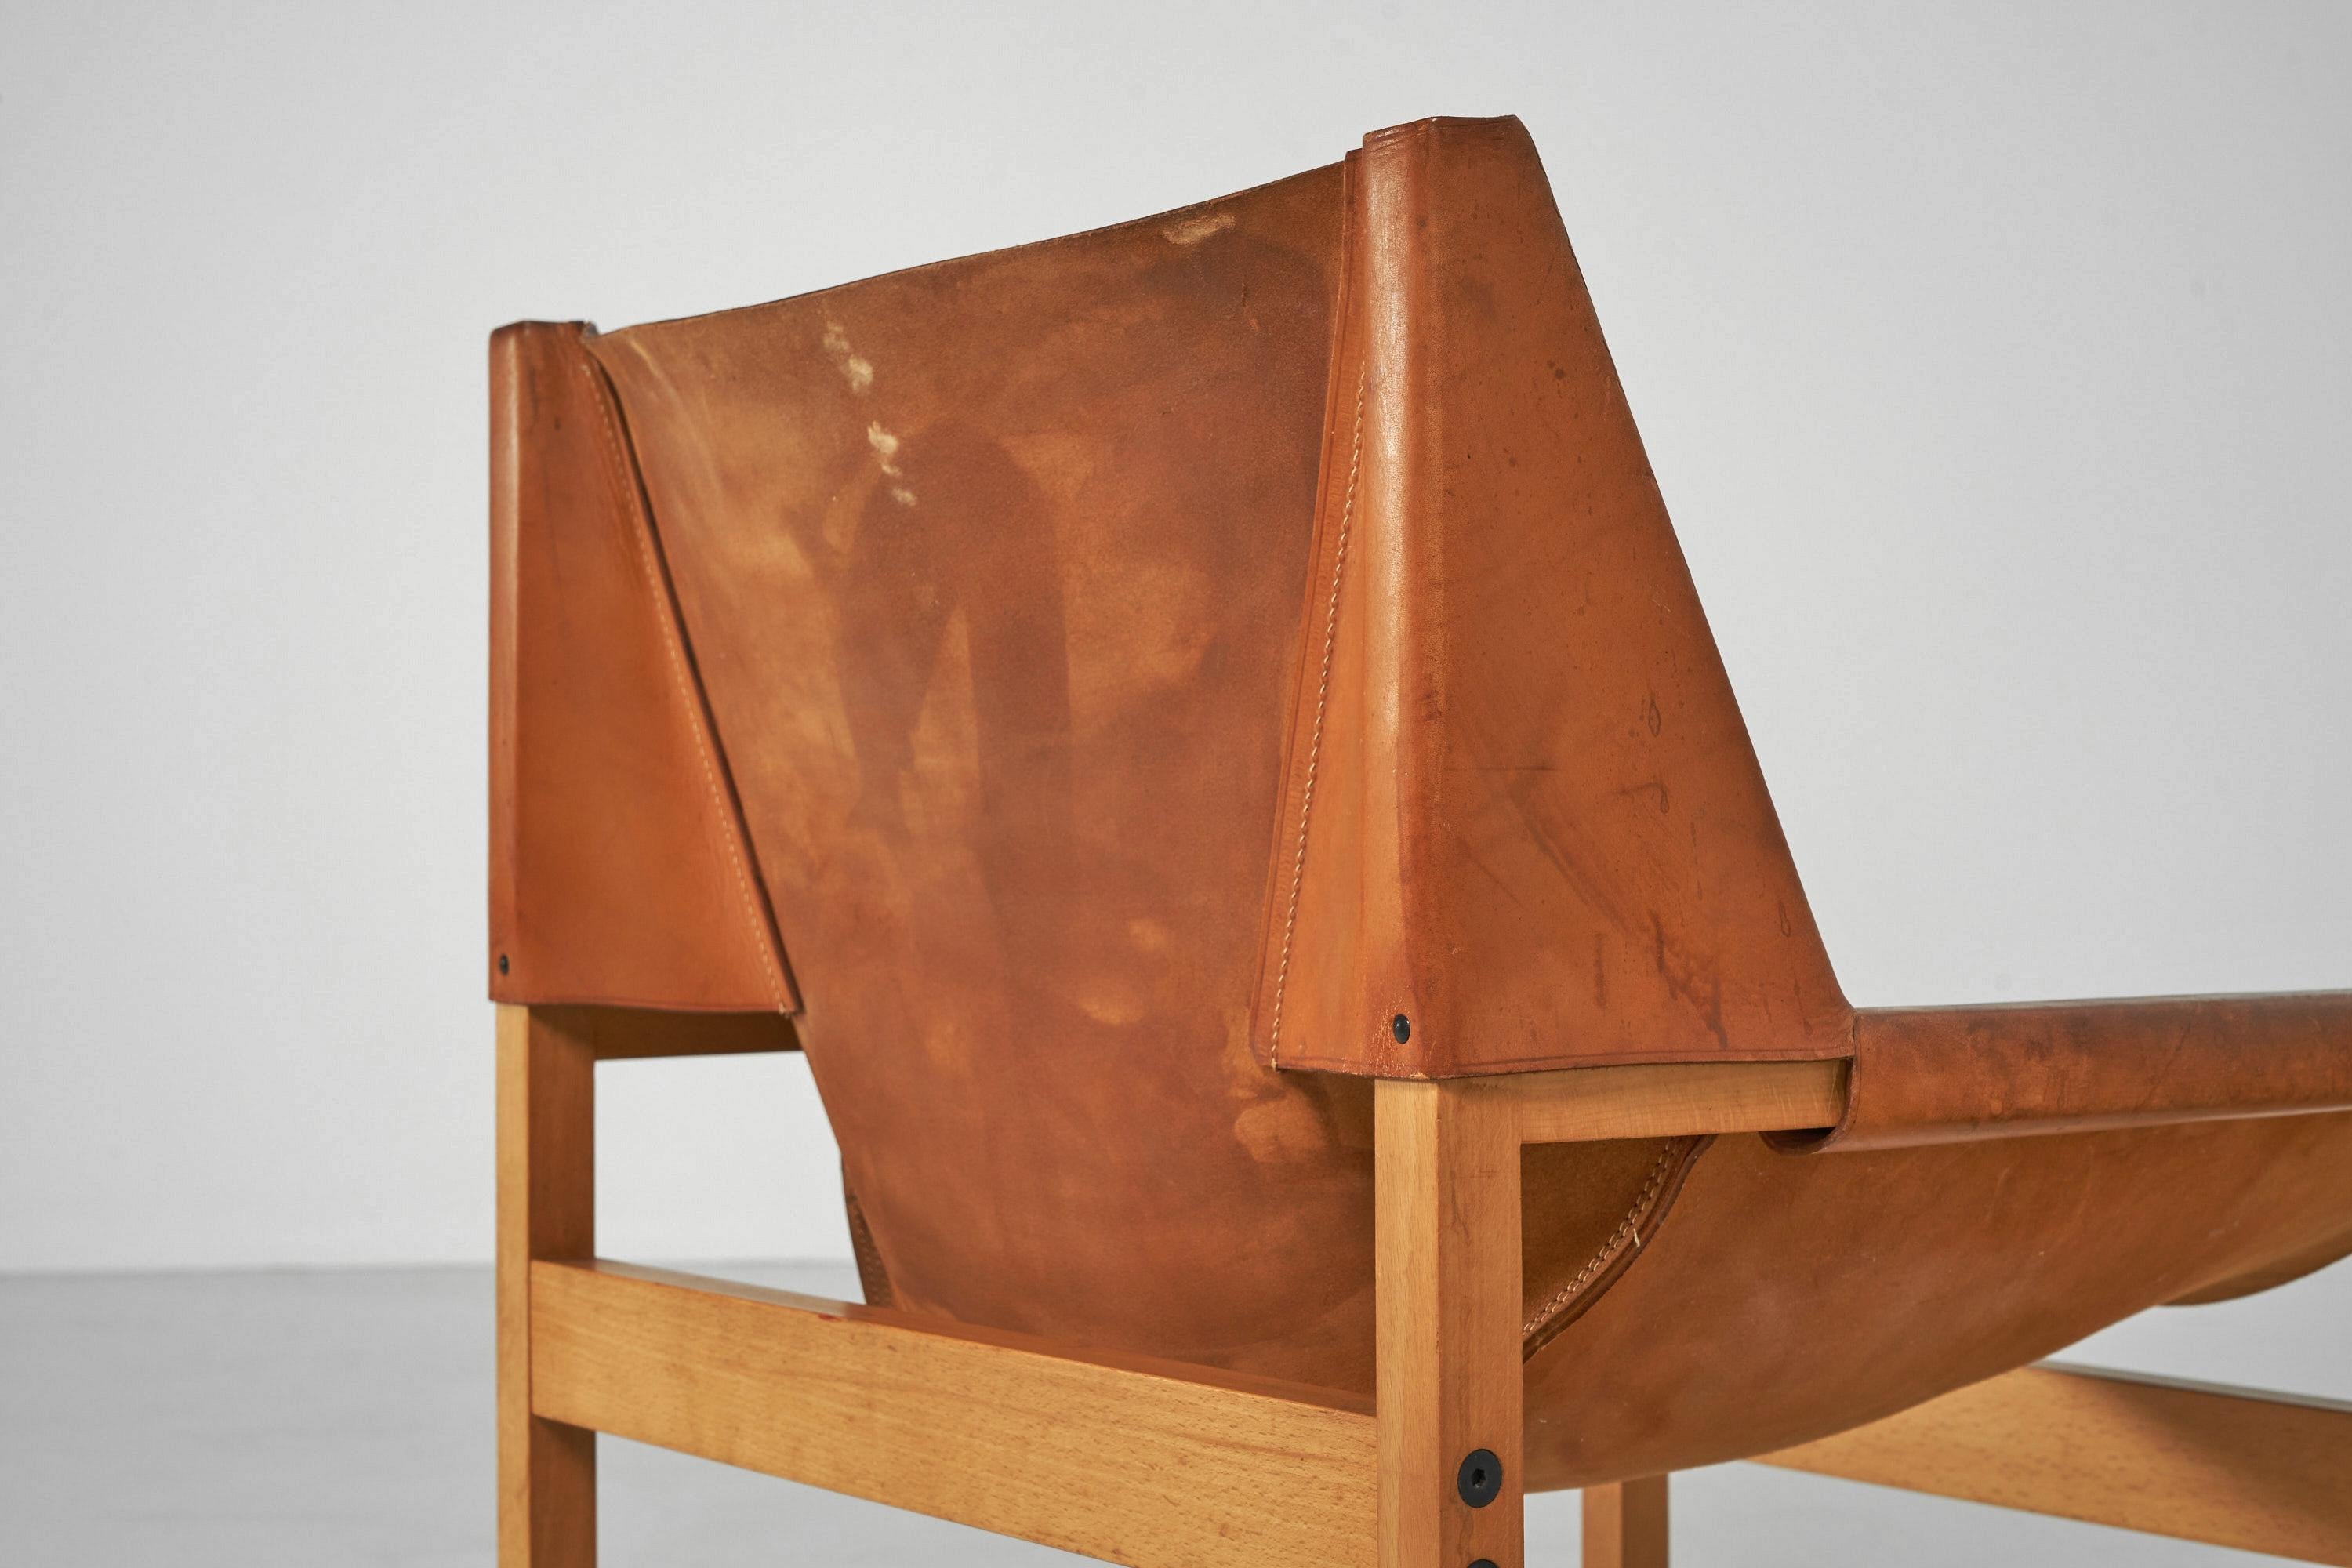 Très belle chaise minimaliste dite 'Calle' modèle n° 320 conçue par Rainer Schell et fabriquée par Franz Schlapp, Allemagne 1964. Cette chaise longue a été conçue par l'architecte Rainer Schell en 1964 pour le fabricant allemand Franz Schlapp Möbel.